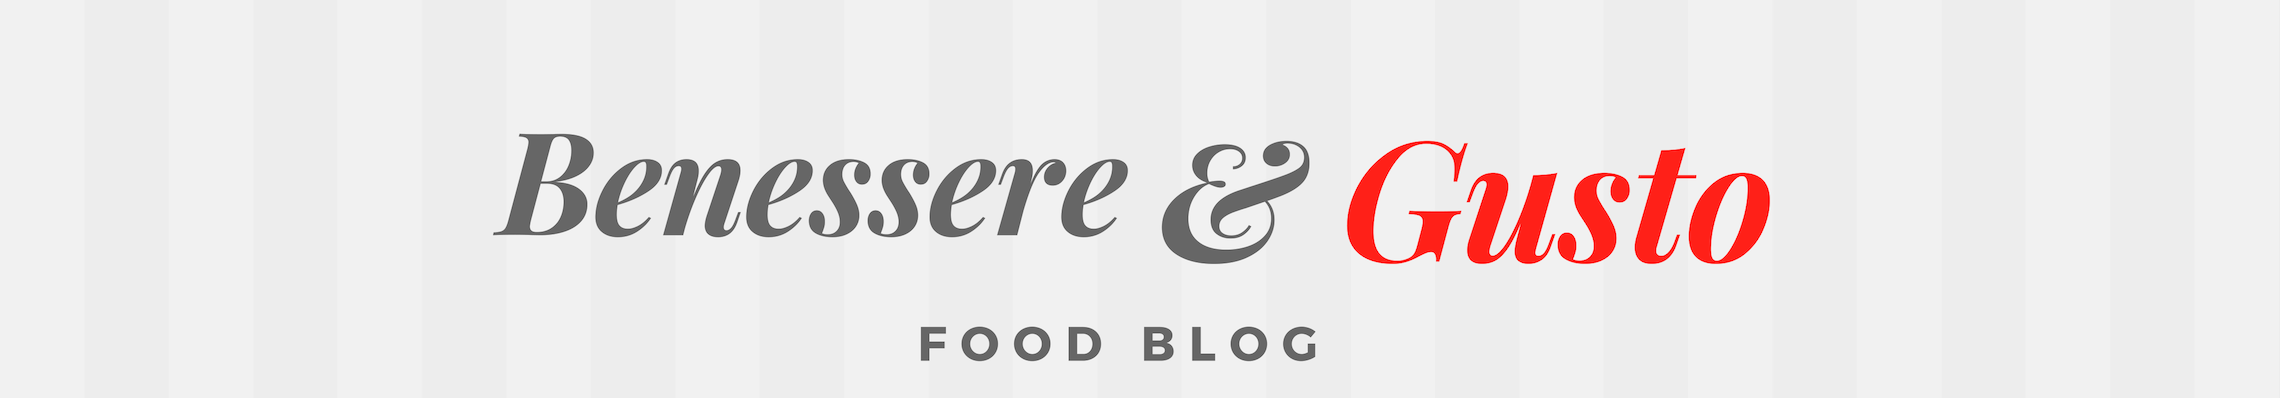 Benessere e Gusto blog